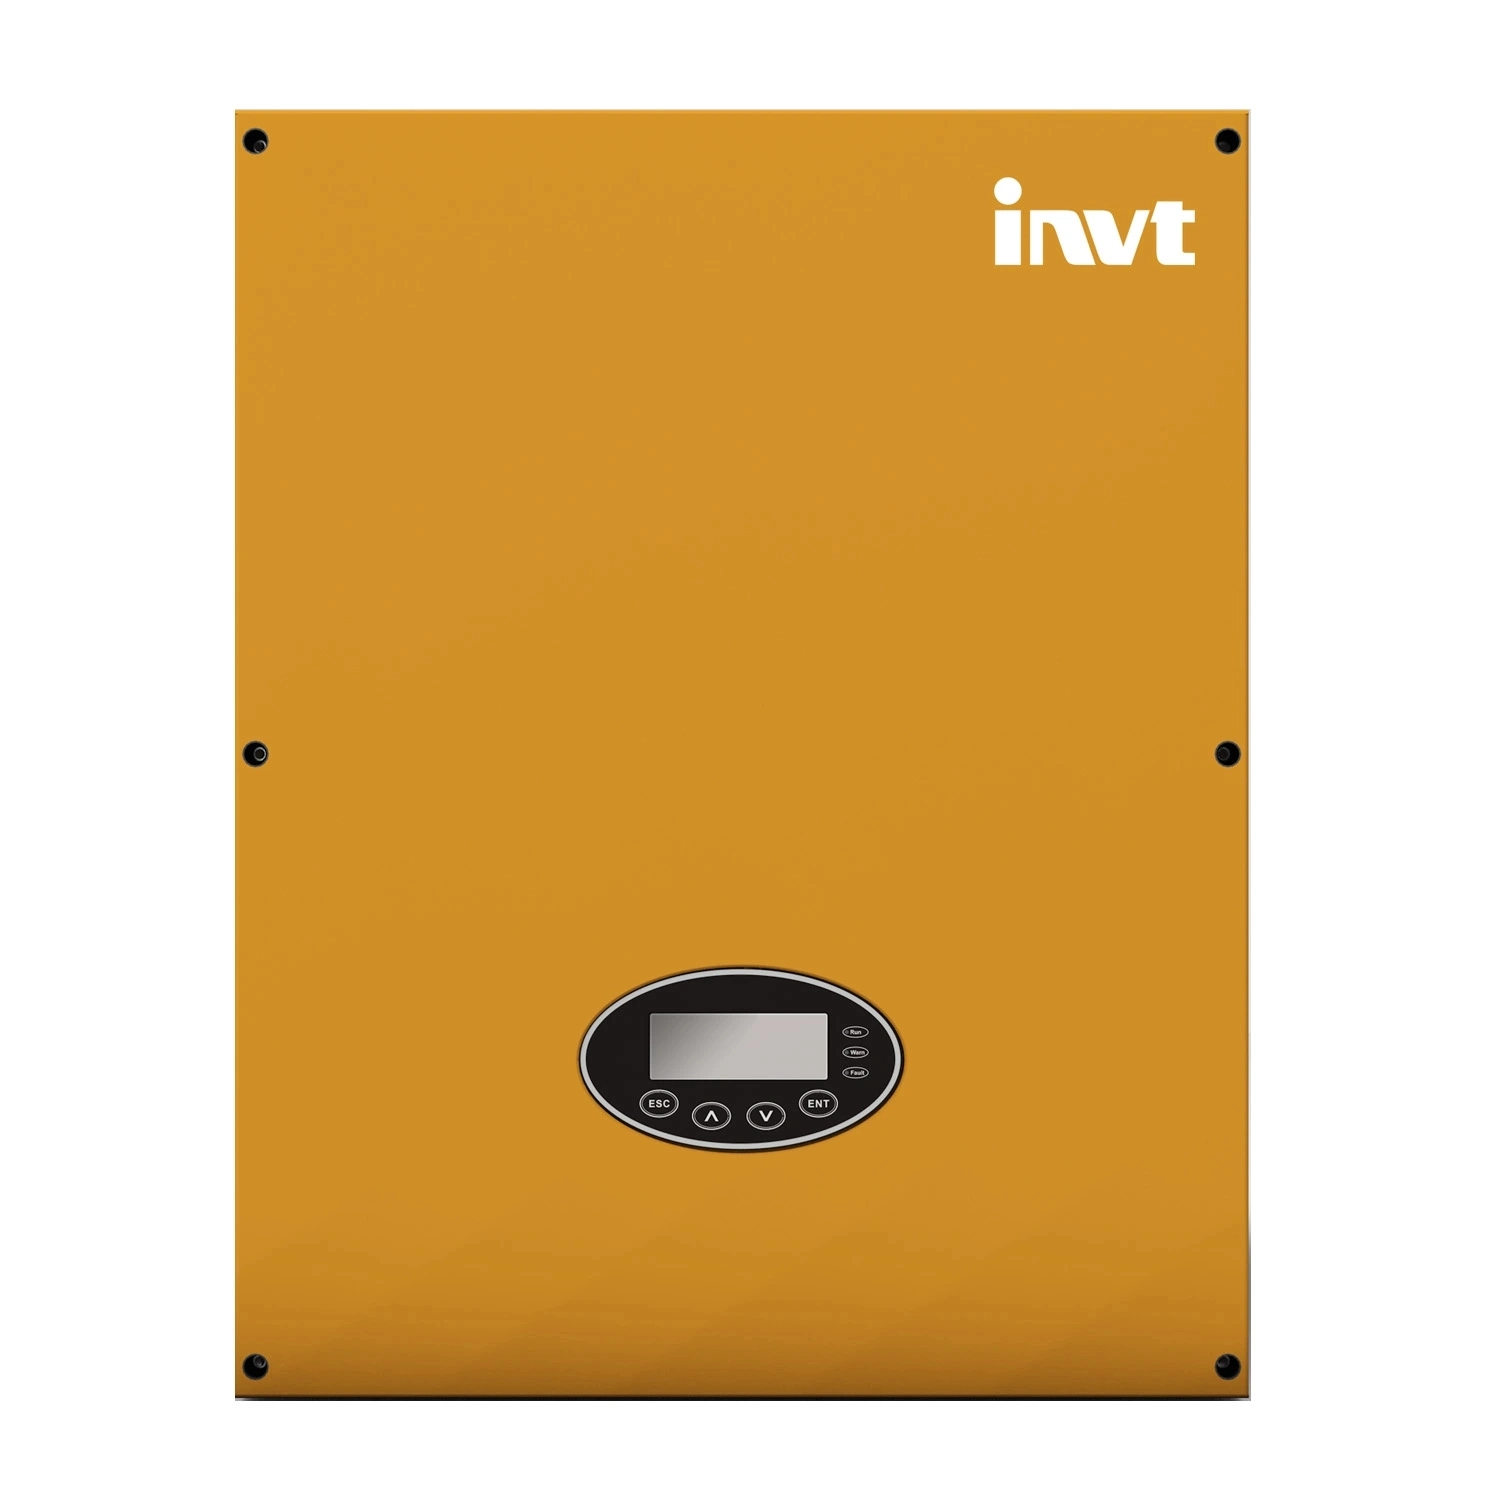 Invt merek 15KW inverter surya tiga fase untuk sistem tenaga surya